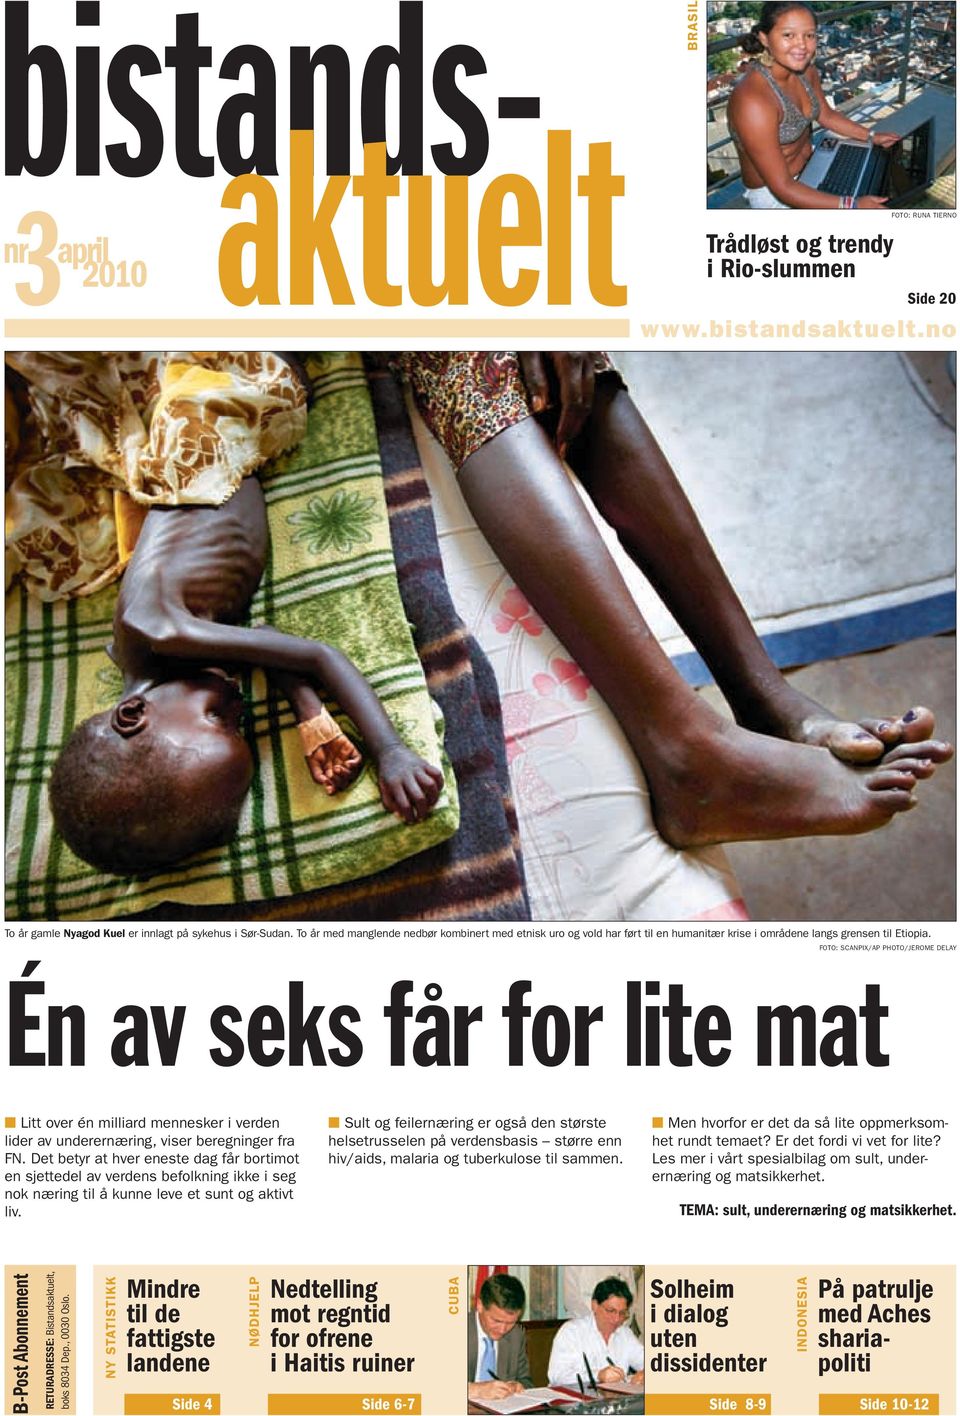 FOTO: SCANPIX/AP PHOTO/JEROME DELAY Én av seks får for lite mat Litt over én milliard mennesker i verden lider av underernæring, viser beregninger fra FN.